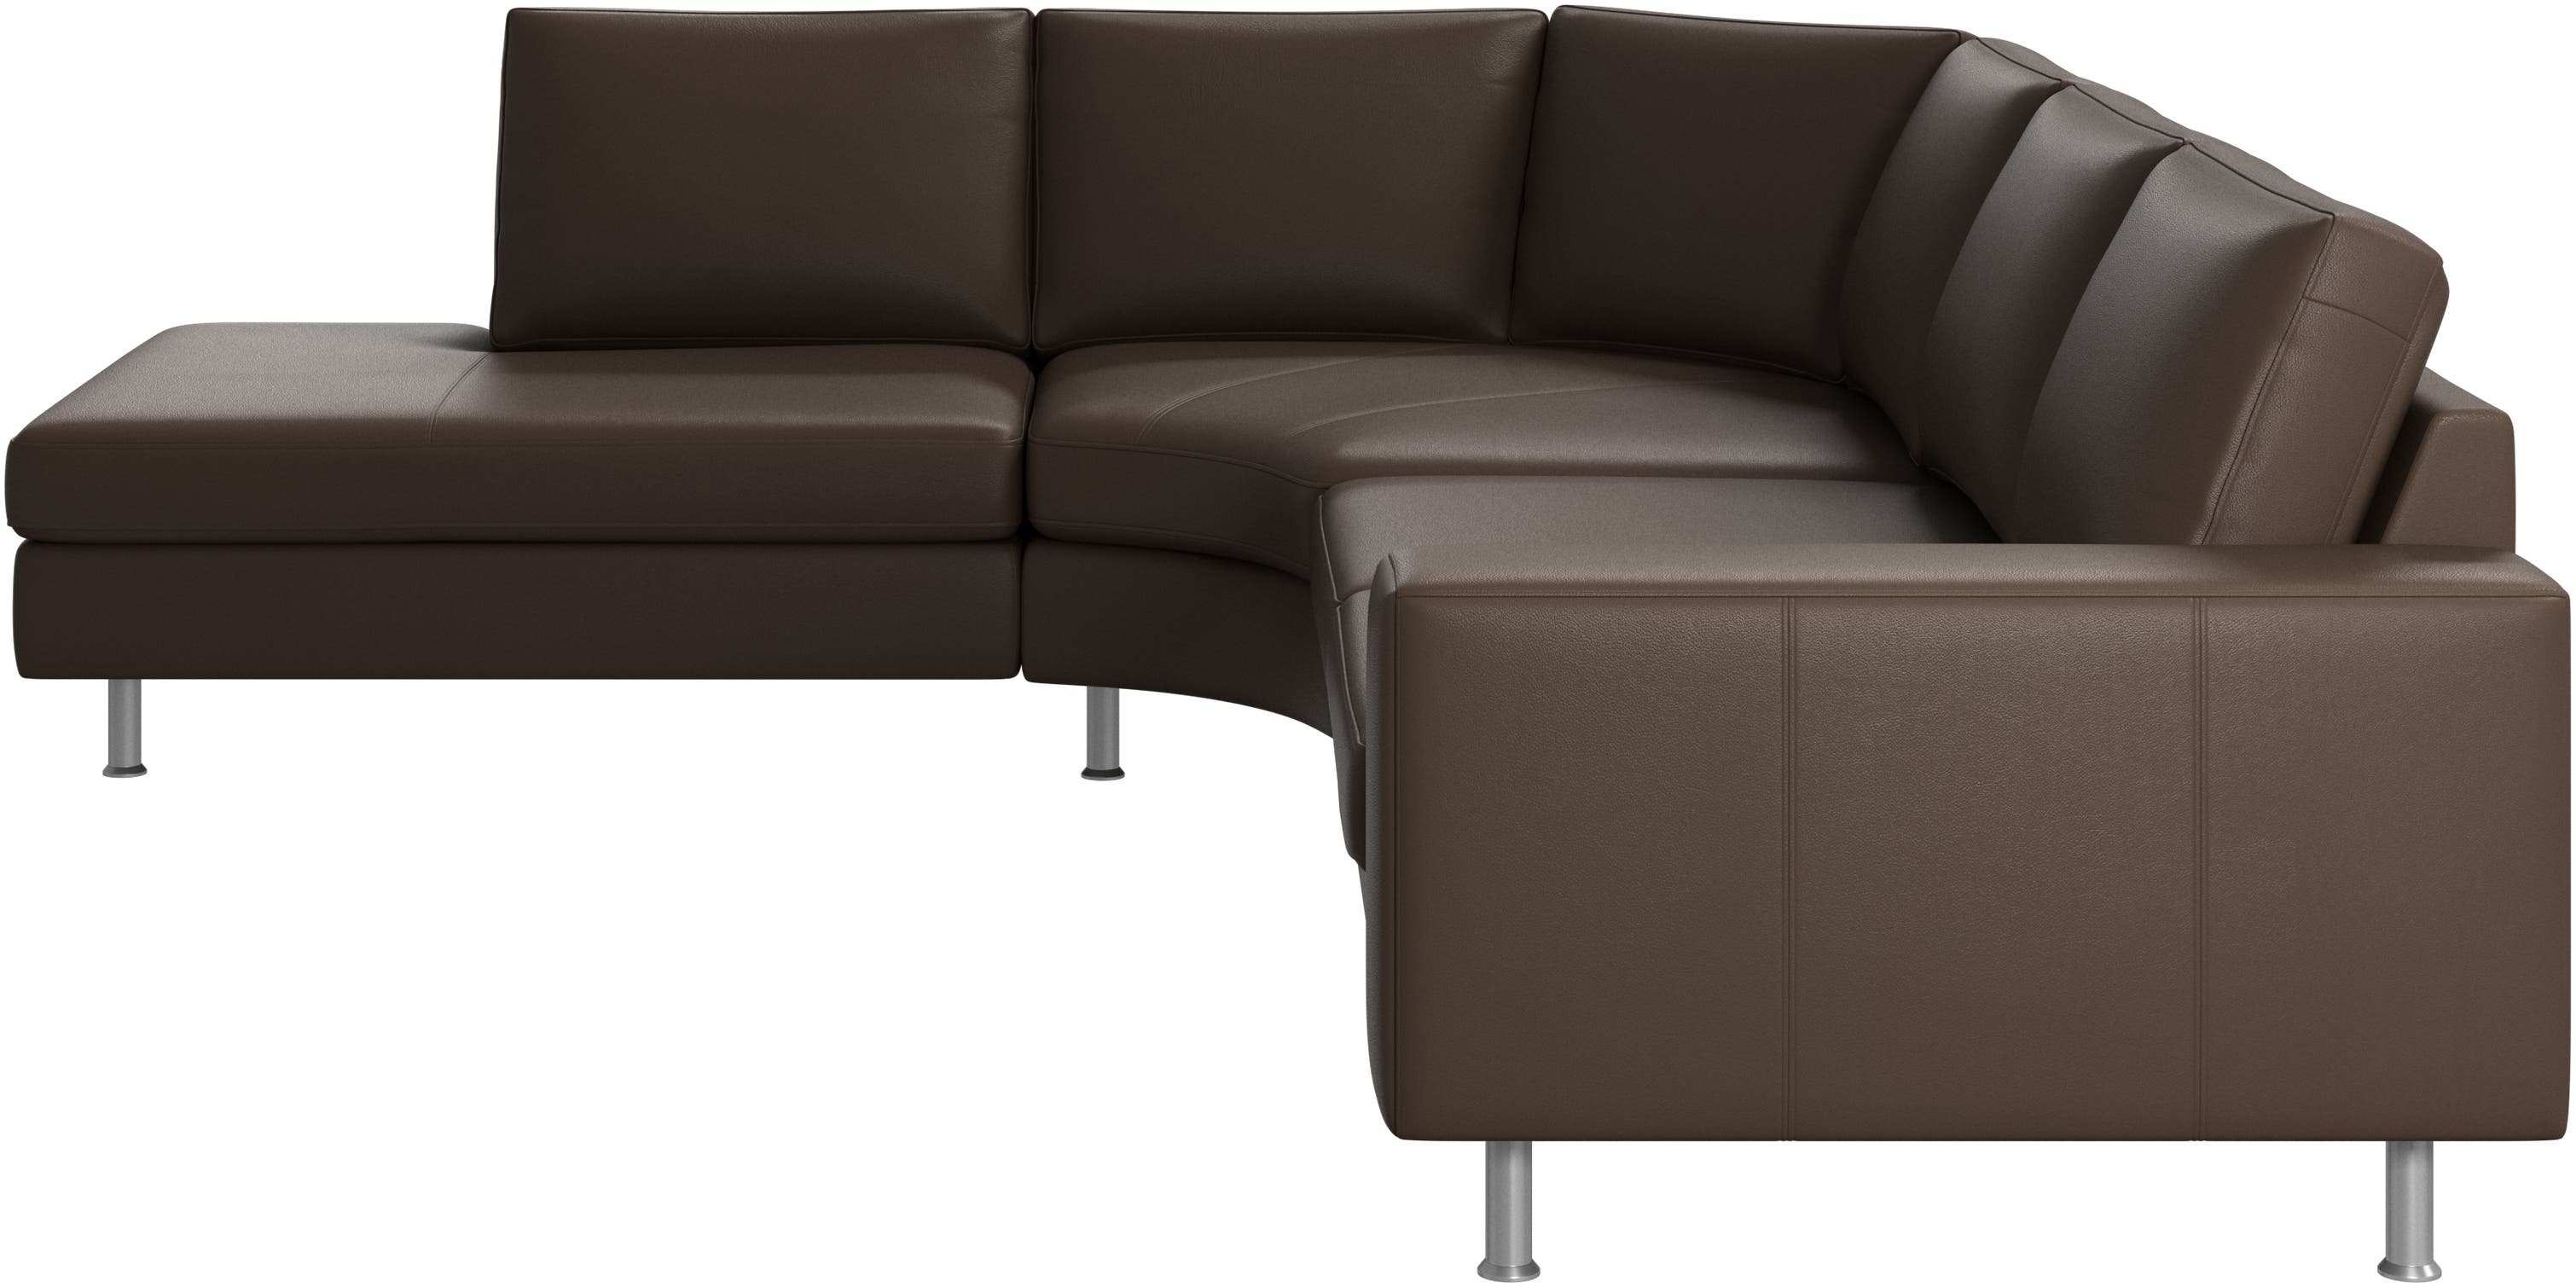 Indivi sofa med rundt hvilemodul